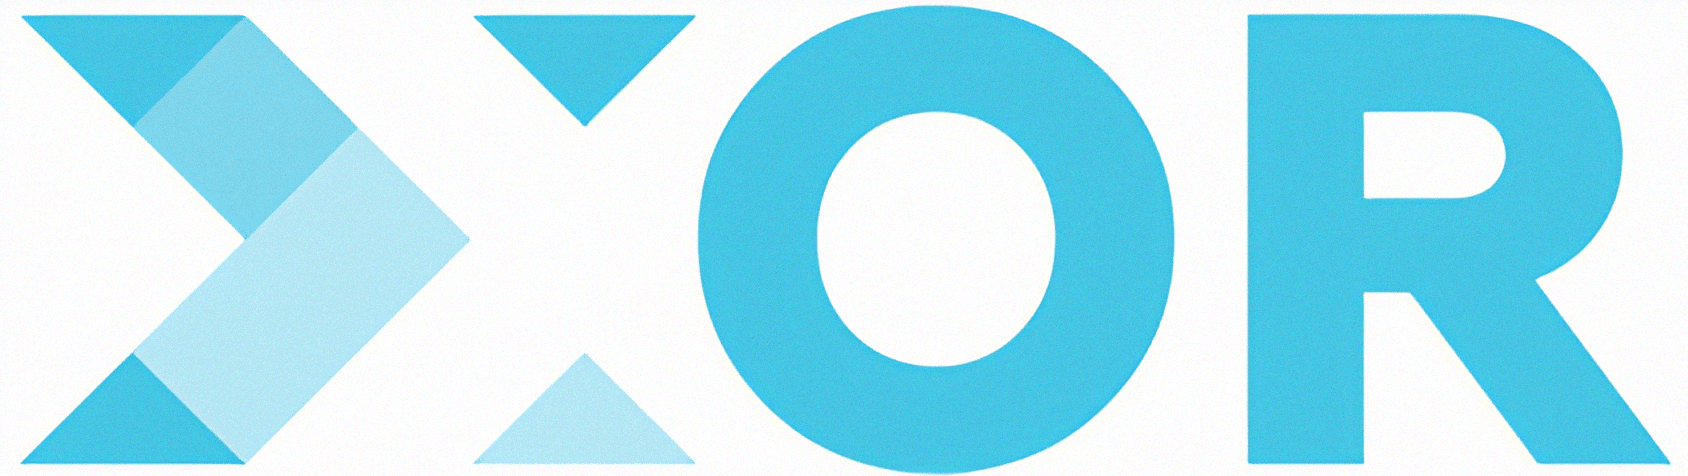 XOR logo high quality (1).png